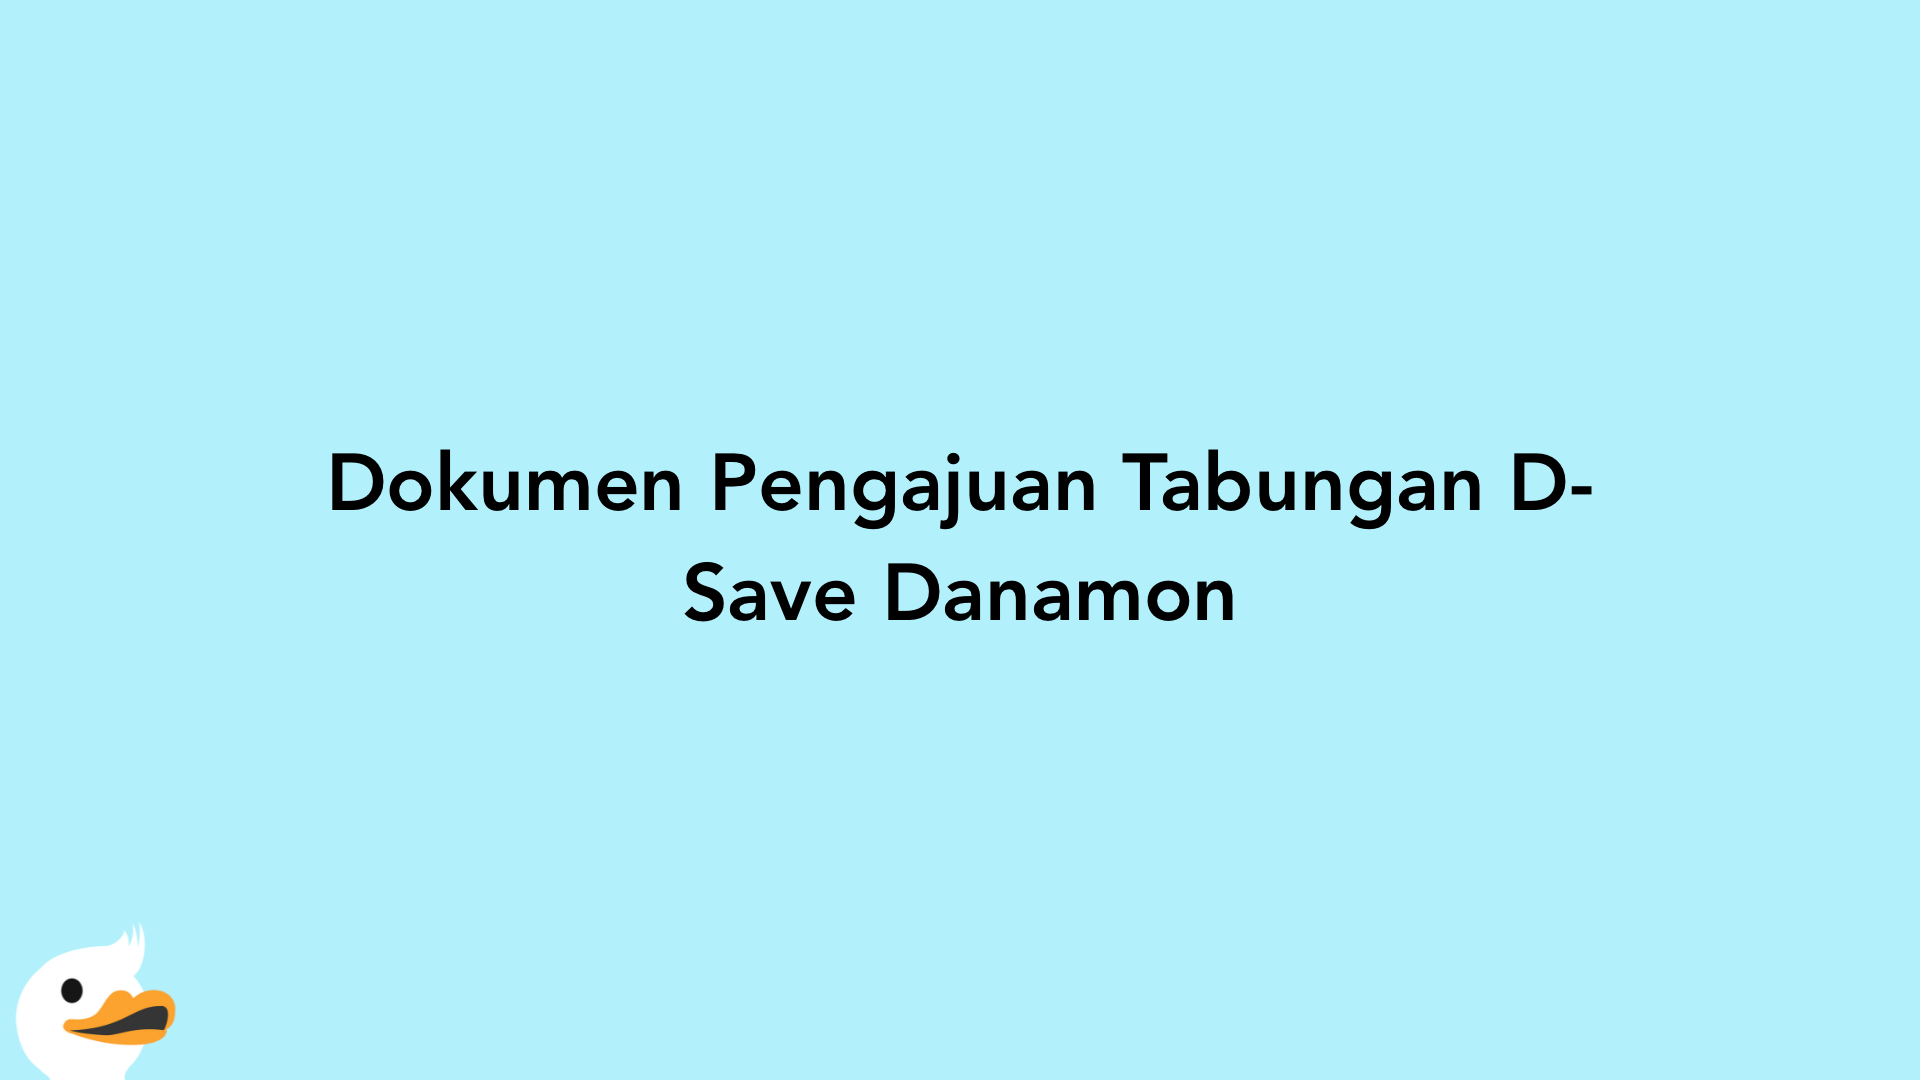 Dokumen Pengajuan Tabungan D-Save Danamon